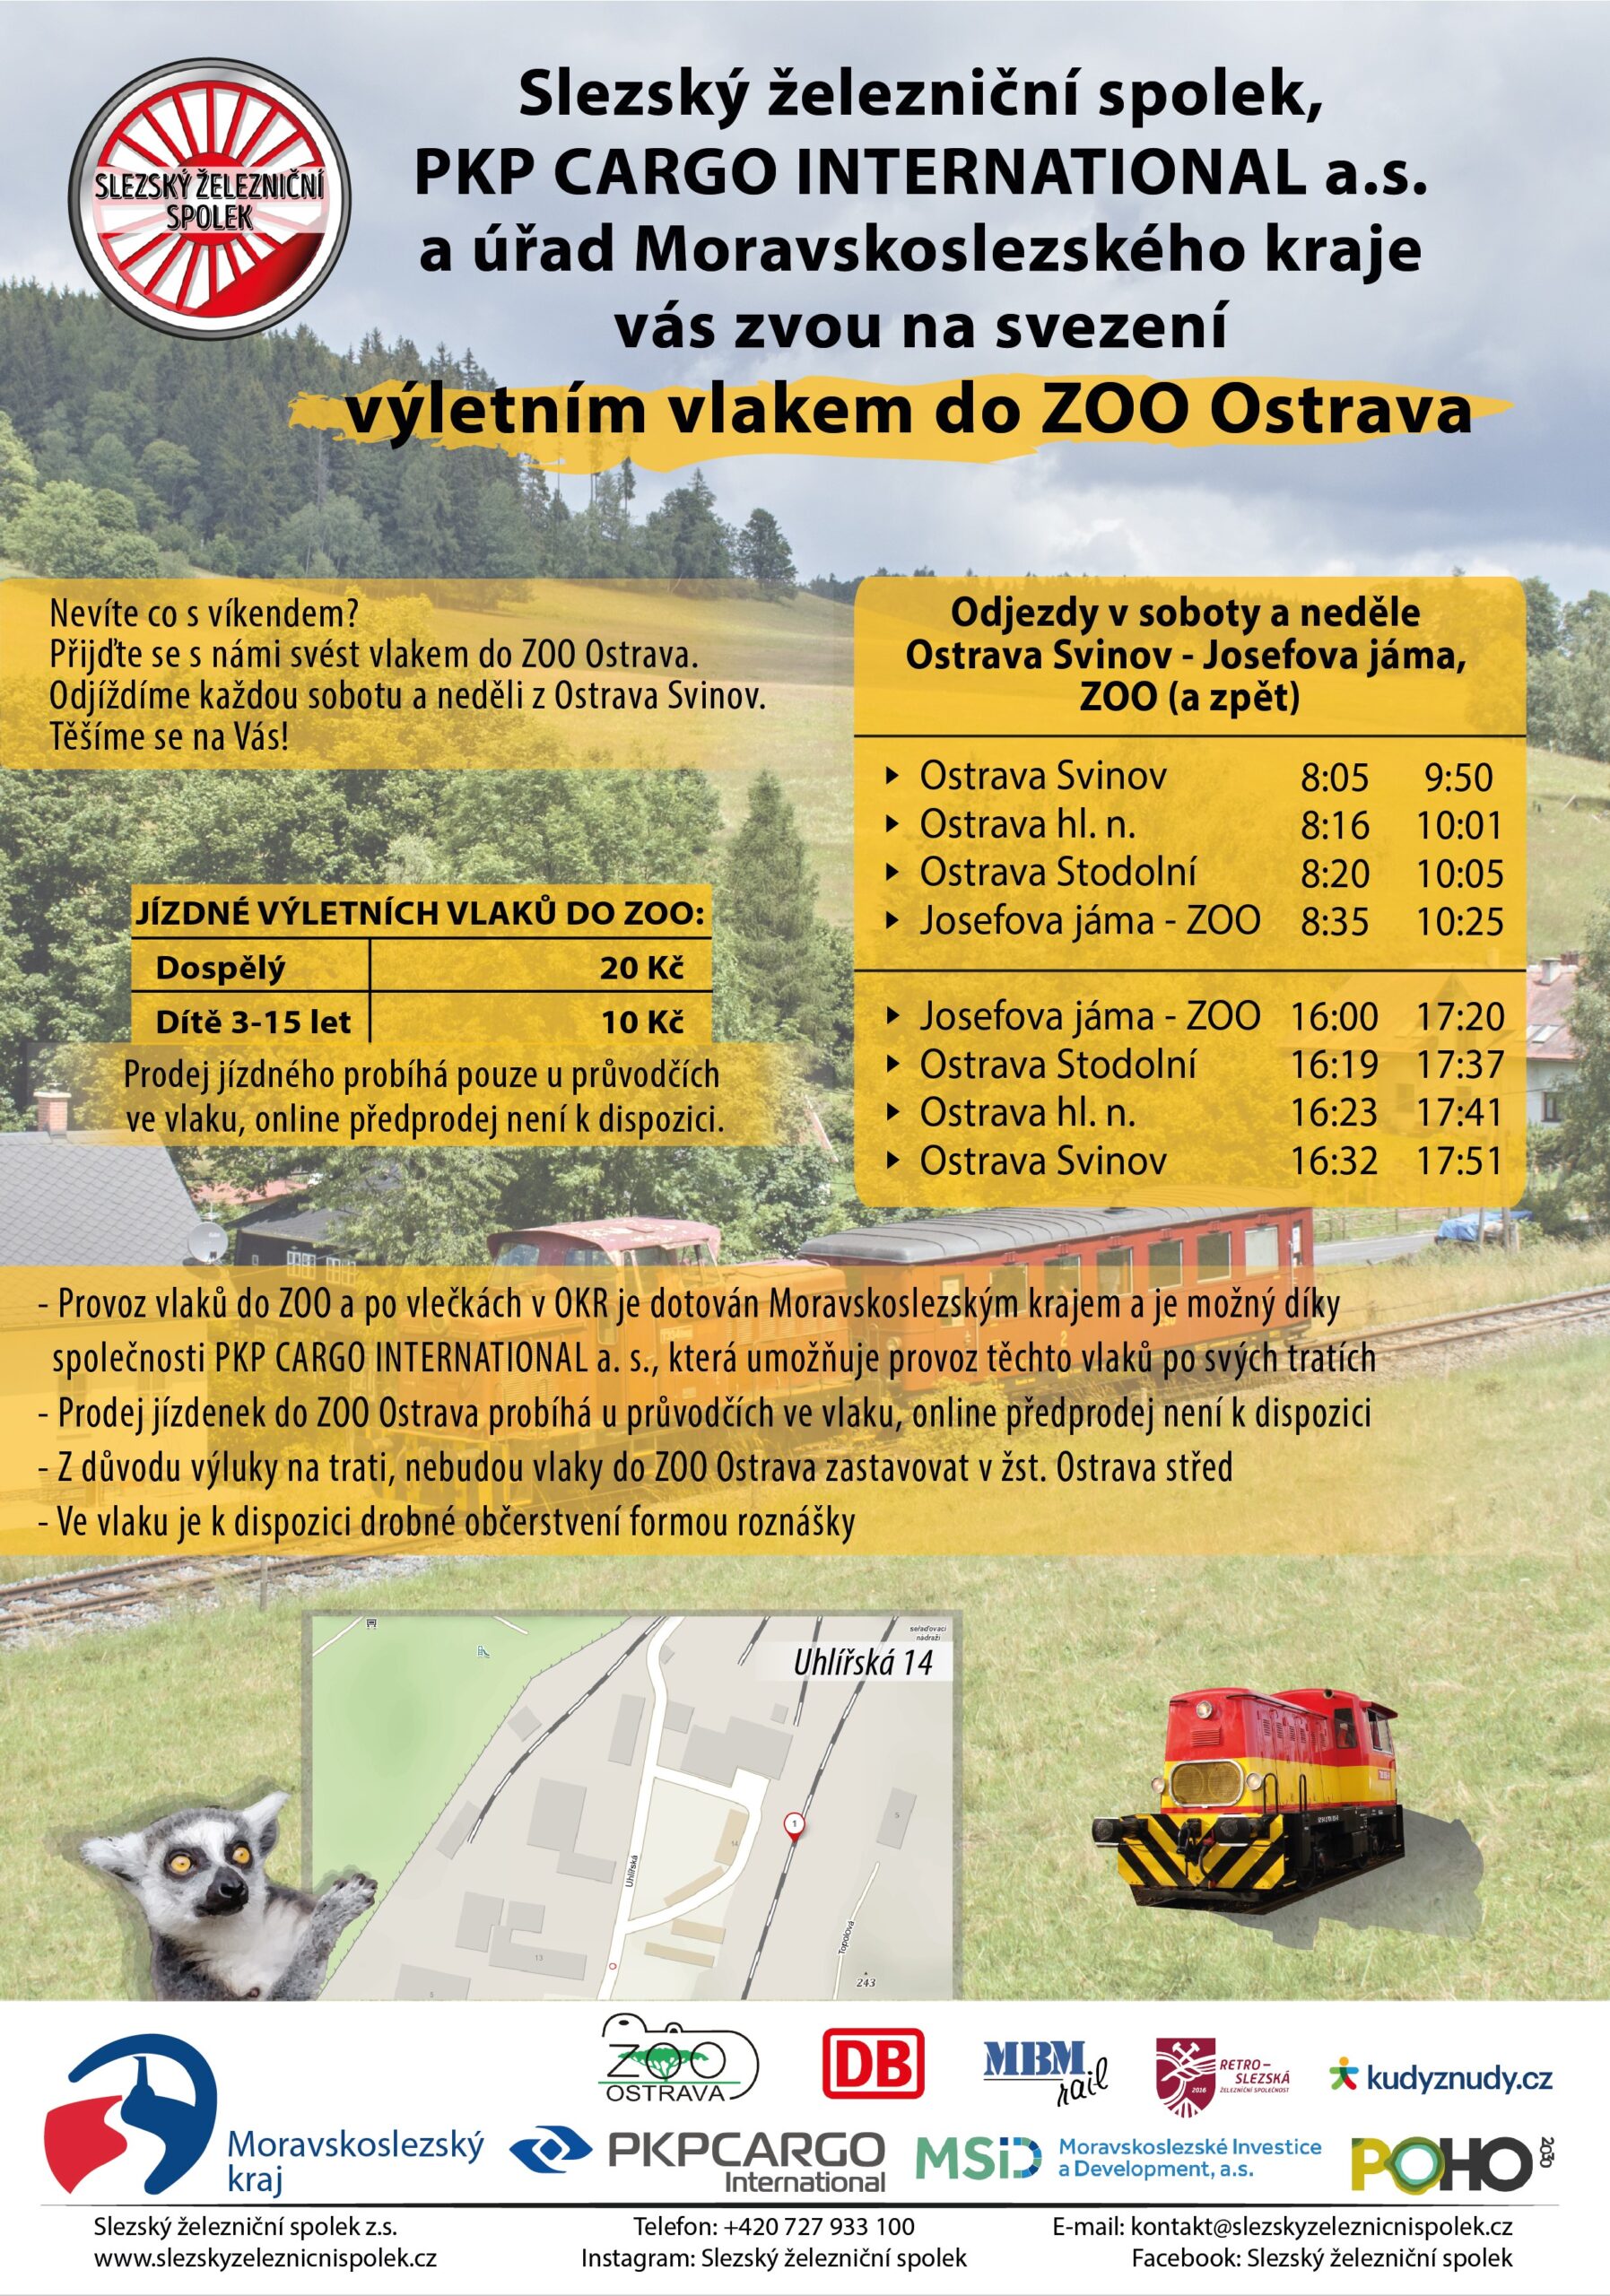 Výletní vlaky z Ostravy Svinova do ZOO Ostrava